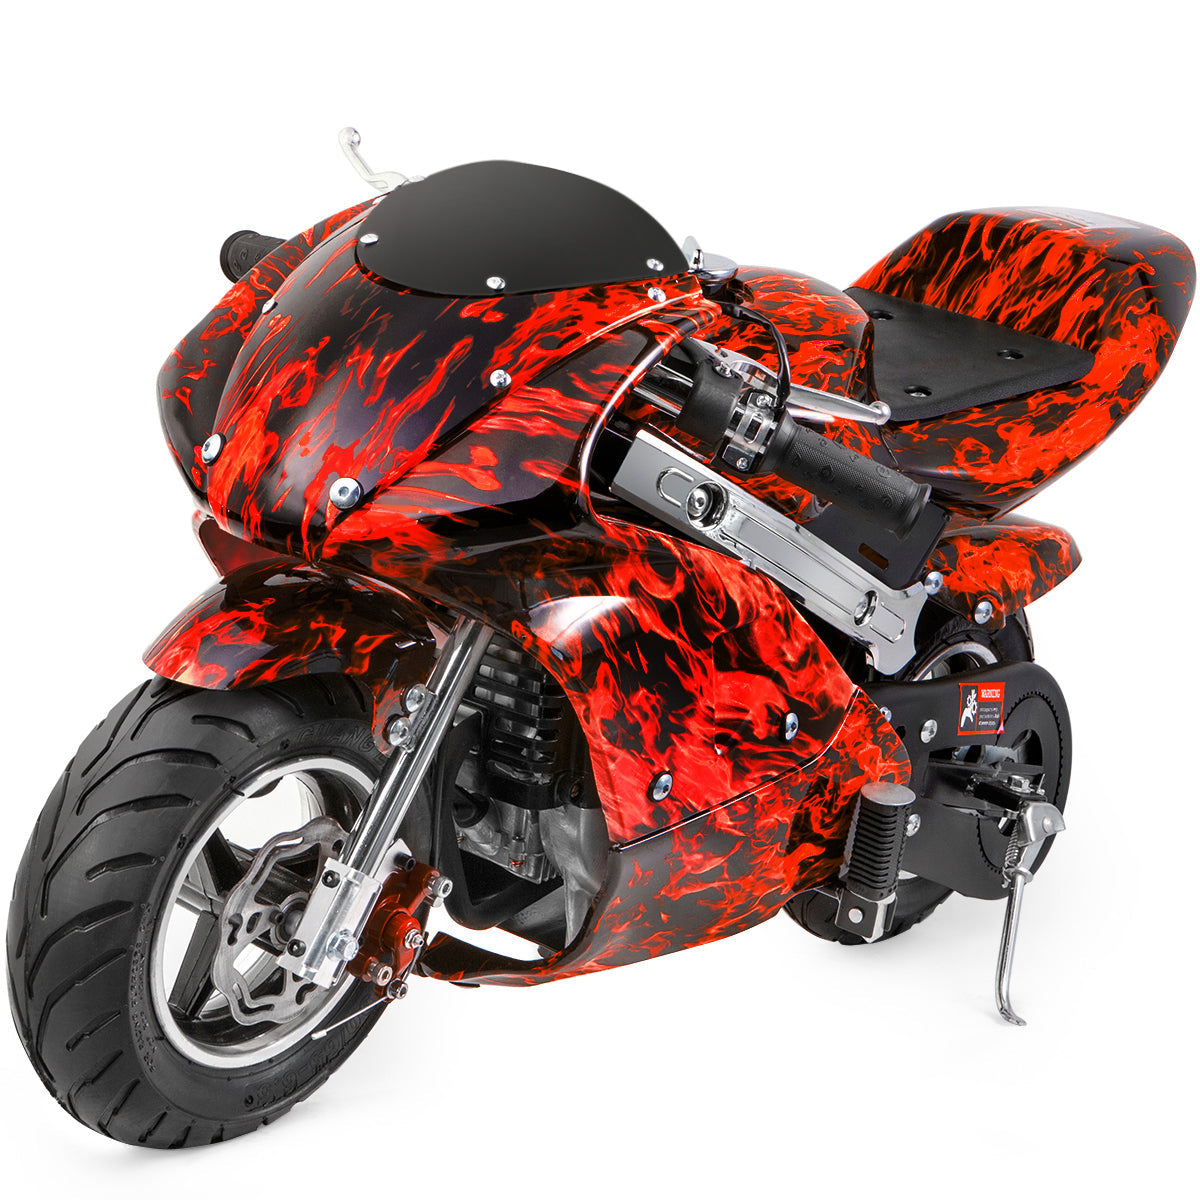 XtremepowerUS Mini motocicleta prémium de bolsillo a gasolina de 40 cc, con  motor de 4 tiempos para niños, con asiento acolchado aprobada por la EPA